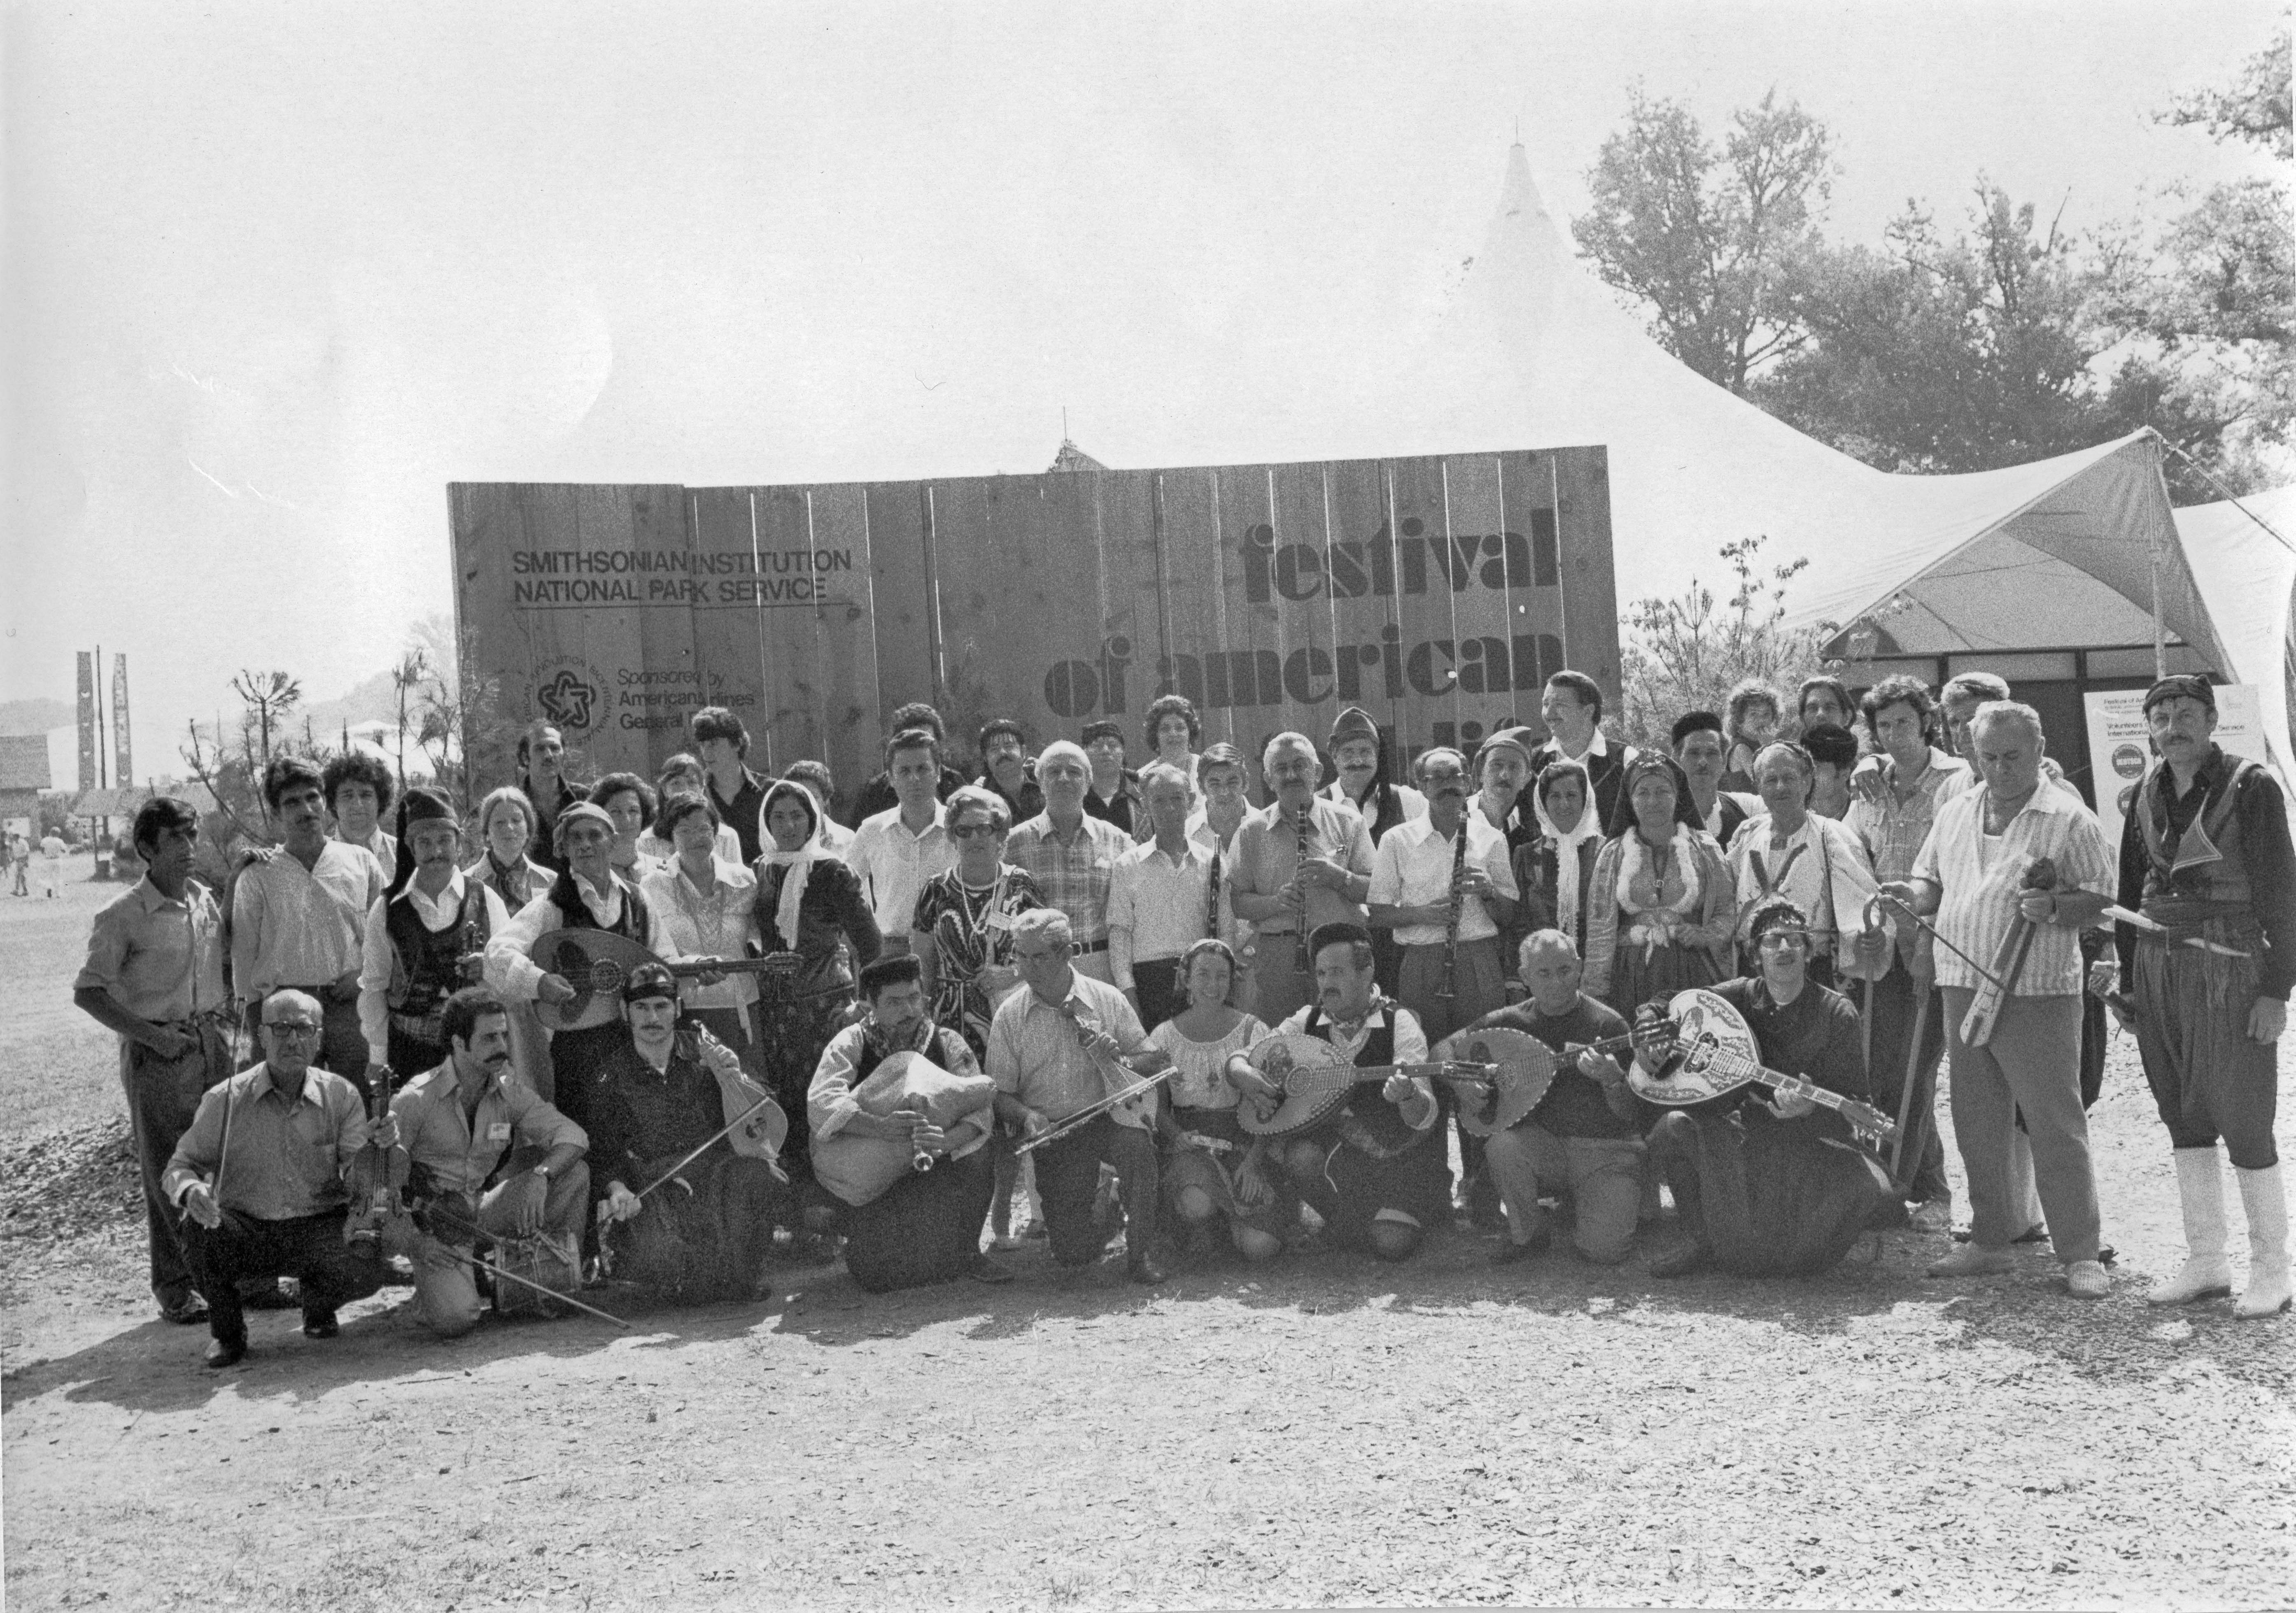 O Σωτήριος (Sam) Τσιάνης (κέντρο) με τον τότε Διευθυντή του Κέντρου Λαογραφίας Στέφανο Ήμελλο (νυν Επόπτη, Ακαδημαϊκό), τον αείμνηστο μουσικολόγο Σπυρίδωνα Περιστέρη και Έλληνες παραδοσιακούς μουσικούς και χορευτές στο Smithsonian Folklife Festival το 1976 κατά τις εορταστικές εκδηλώσεις για τα διακόσια χρόνια από την Αμερικανική Επανάσταση και την δημιουργία των Ηνωμένων Πολιτειών (Φωτογραφικό Αρχείο ΚΕΕΛ).